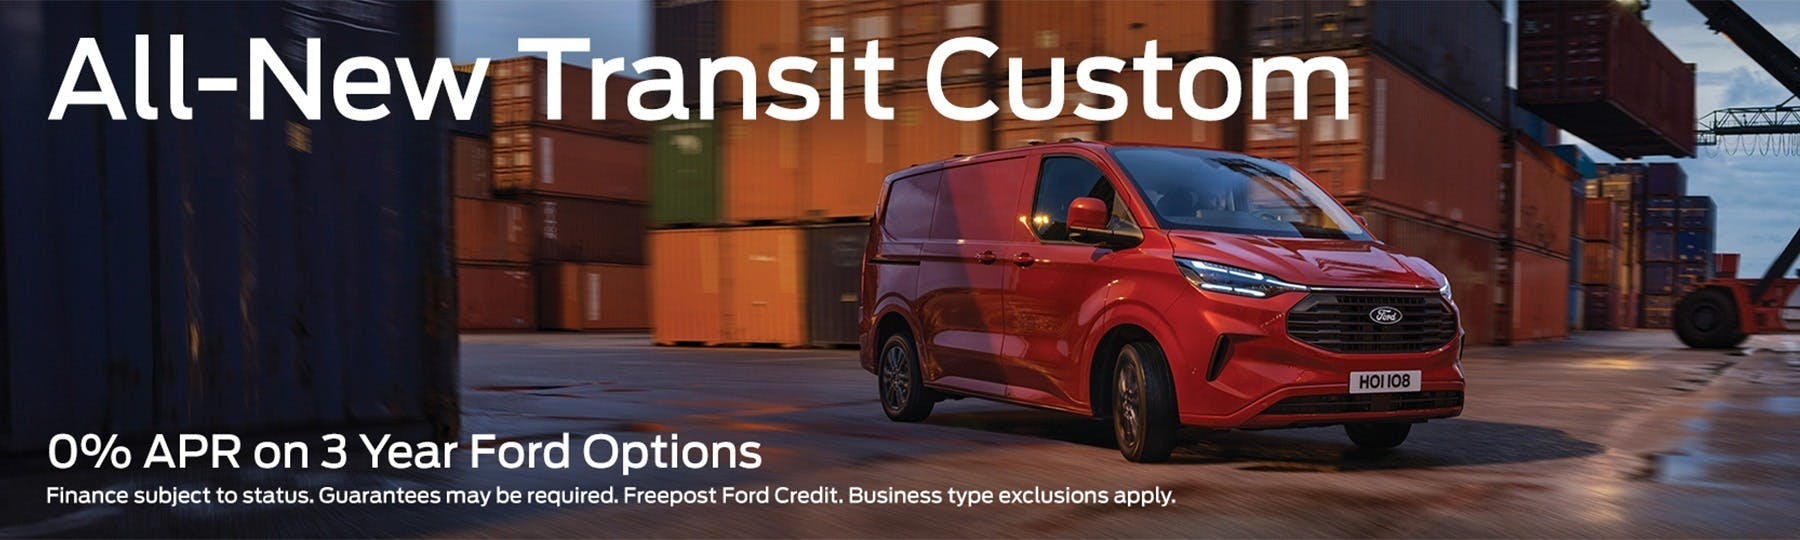 All-New Ford Transit Custom New Van Offer